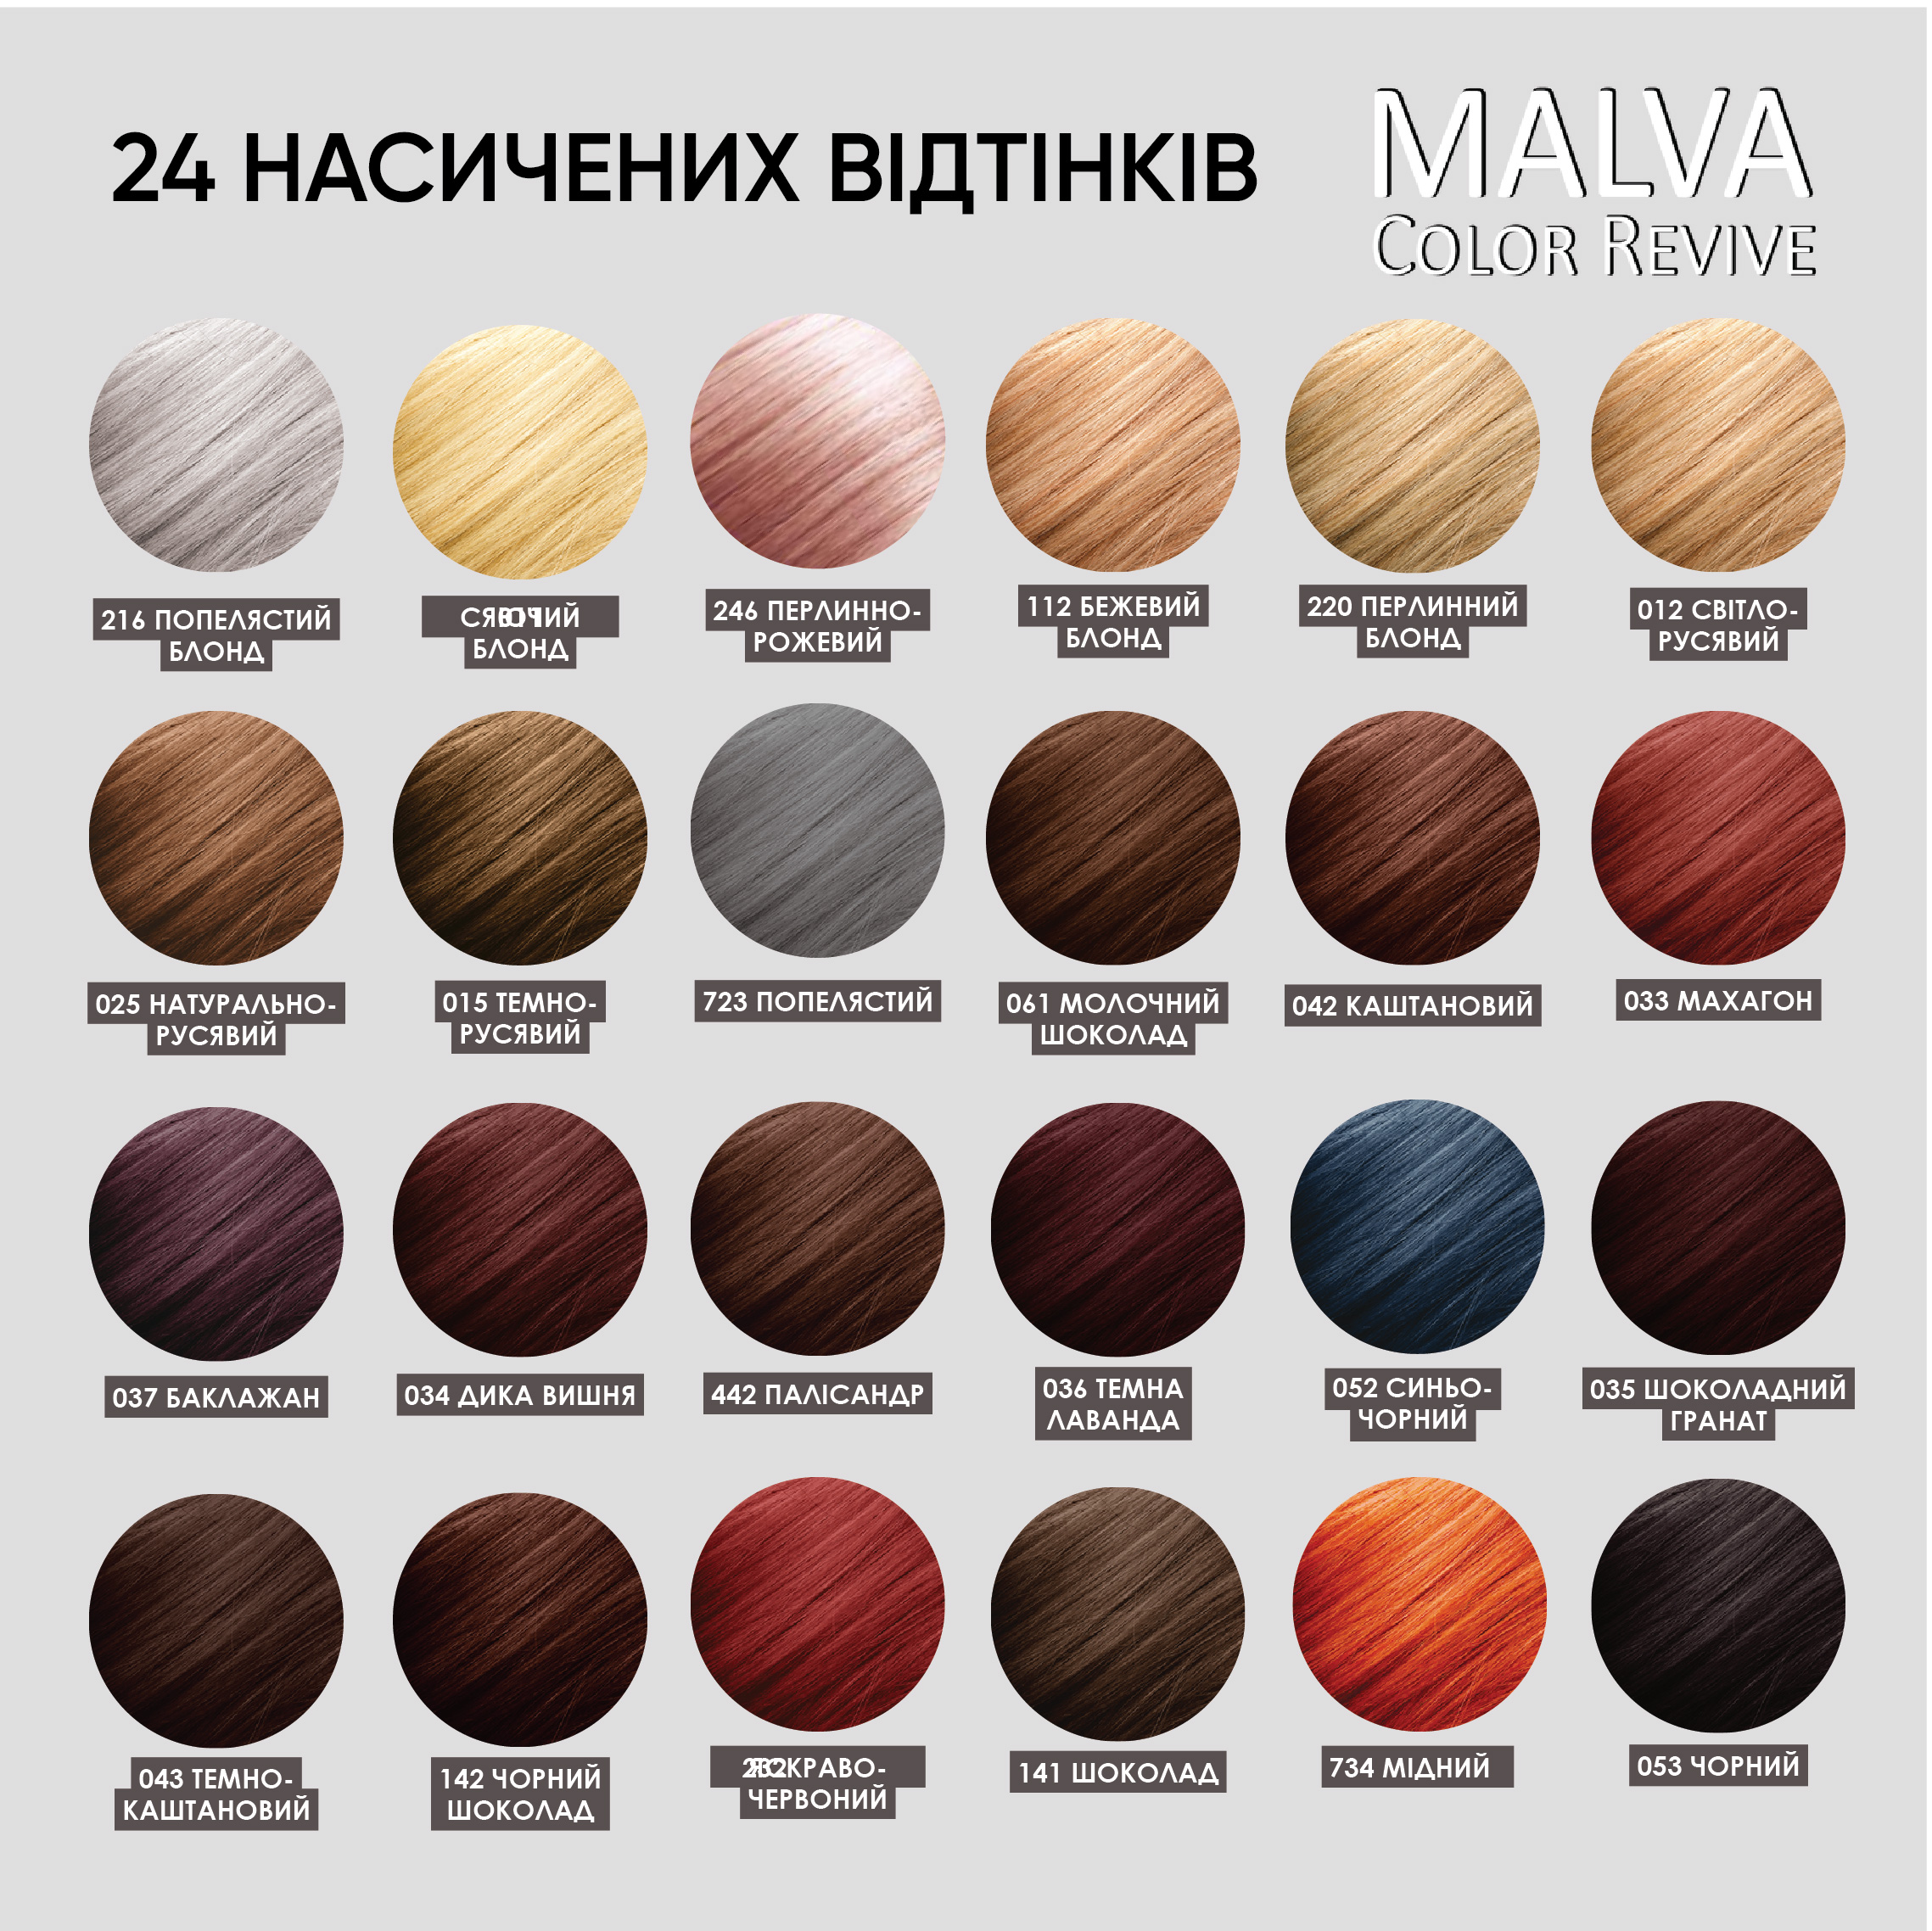 Стійка крем-фарба для волосся Malva Color Revive відтінок 036 Темна лаванда - фото 6